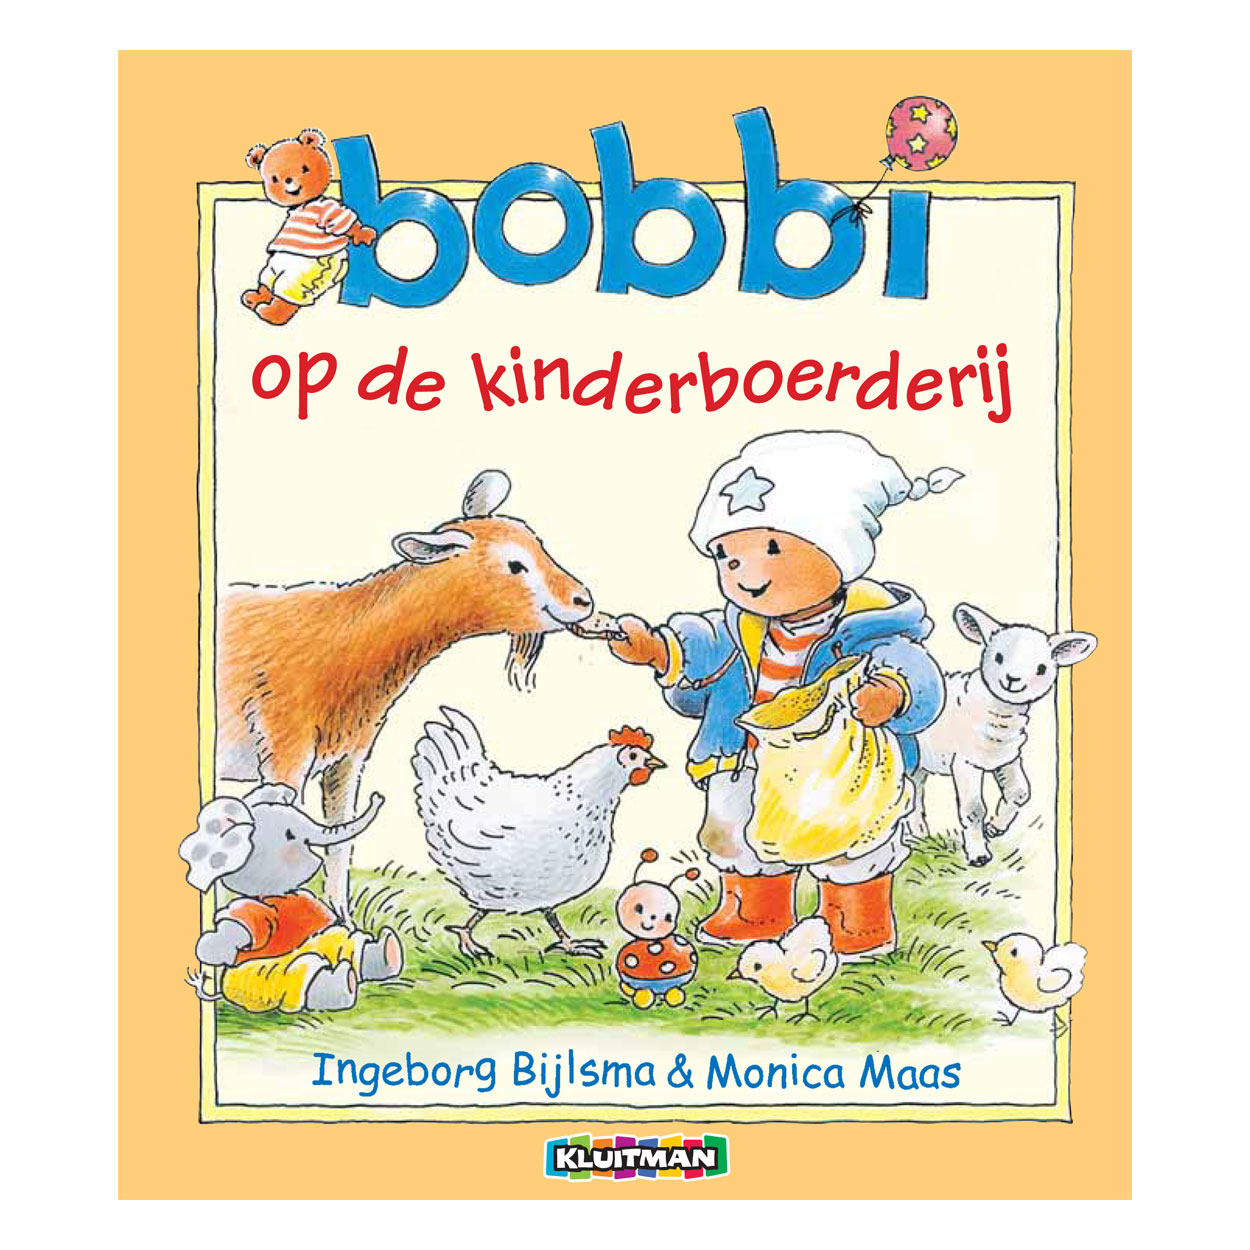 Uitgeverij Kluitman Bobbi op de kinderboerderij Top Merken Winkel